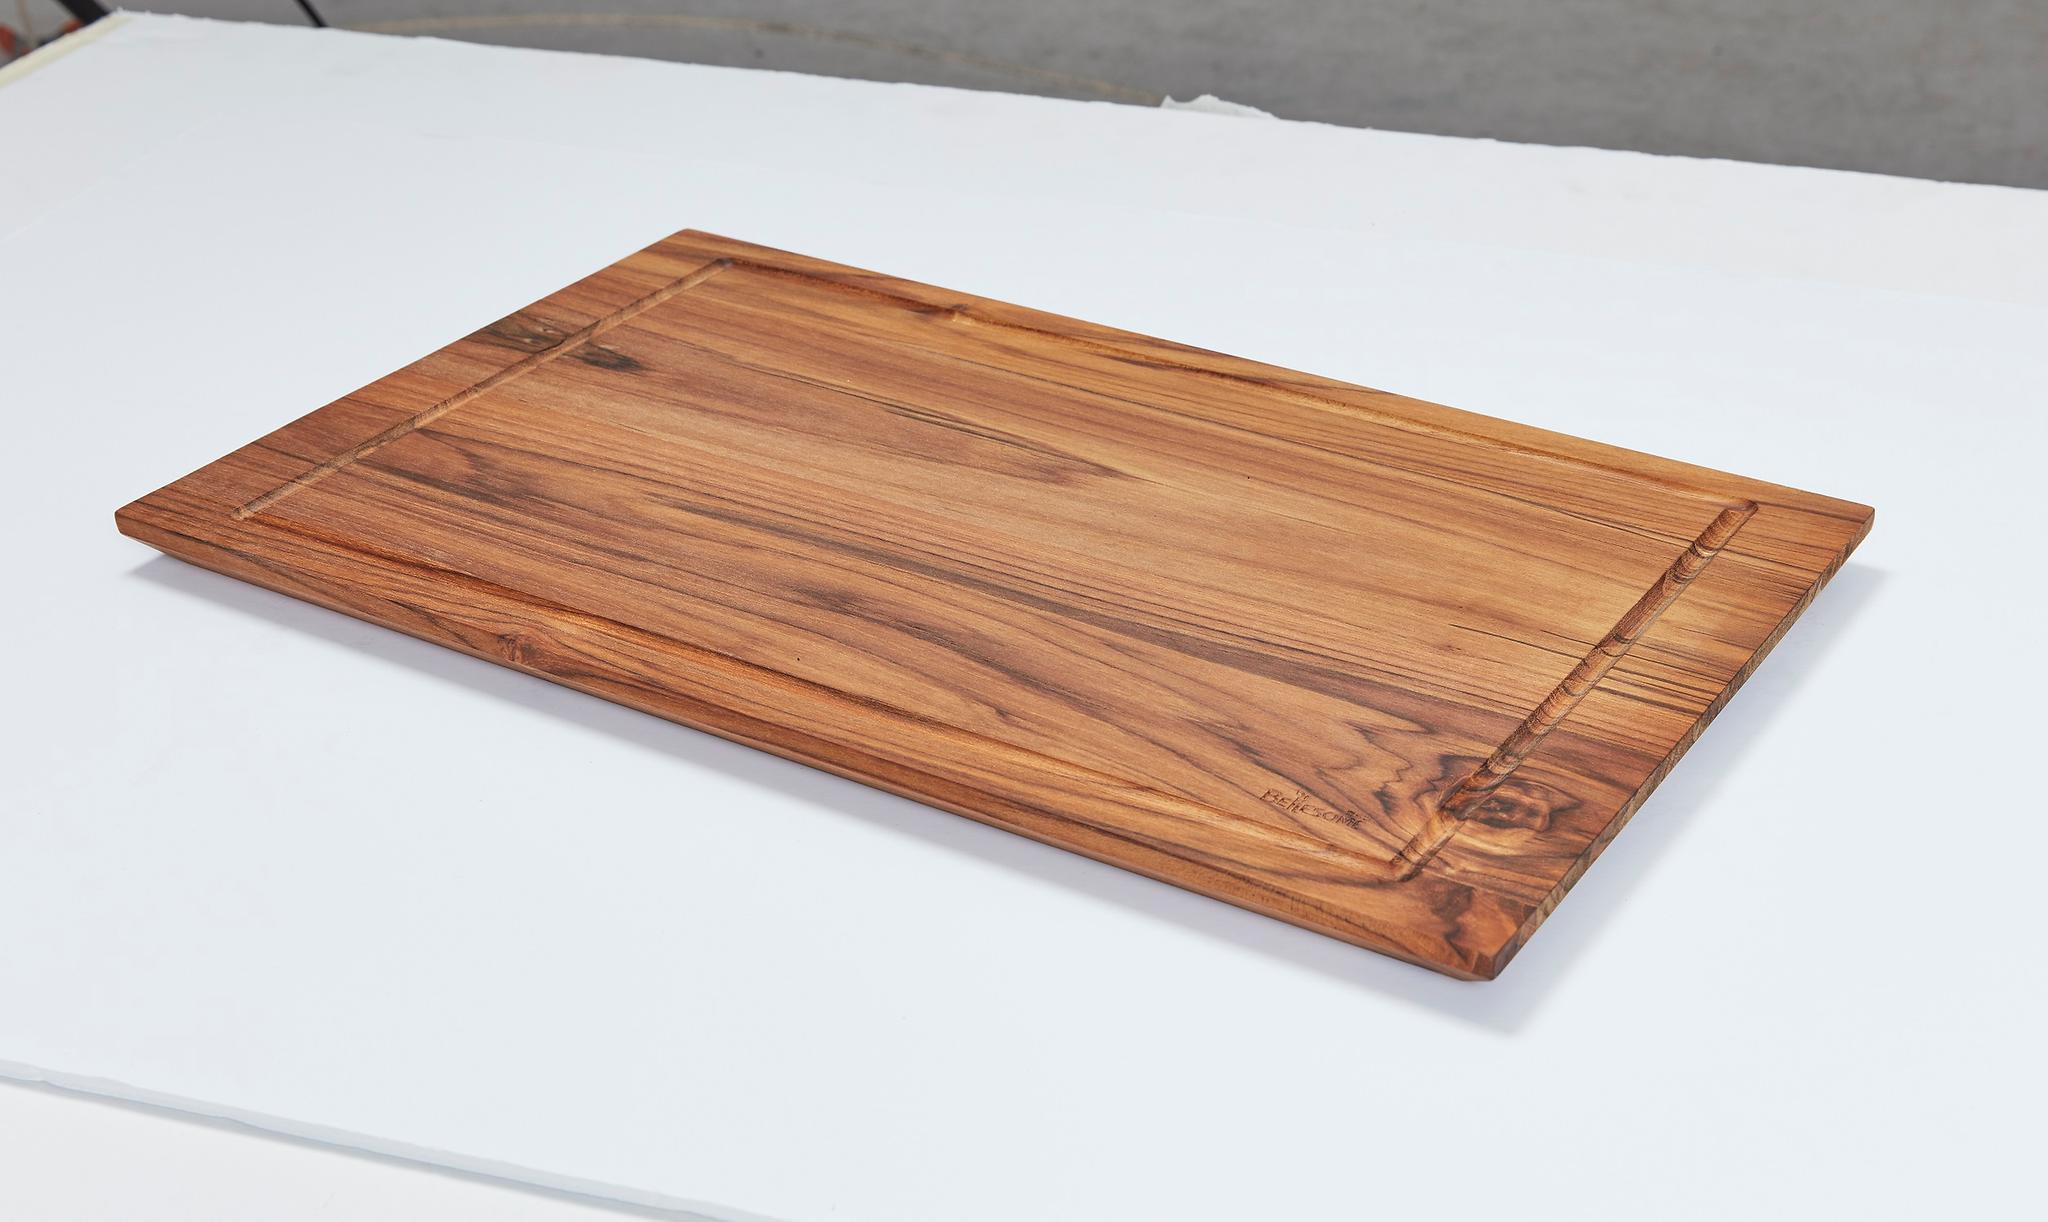 천연목재 플레이트 도마 제품 두 번째 큰 사진